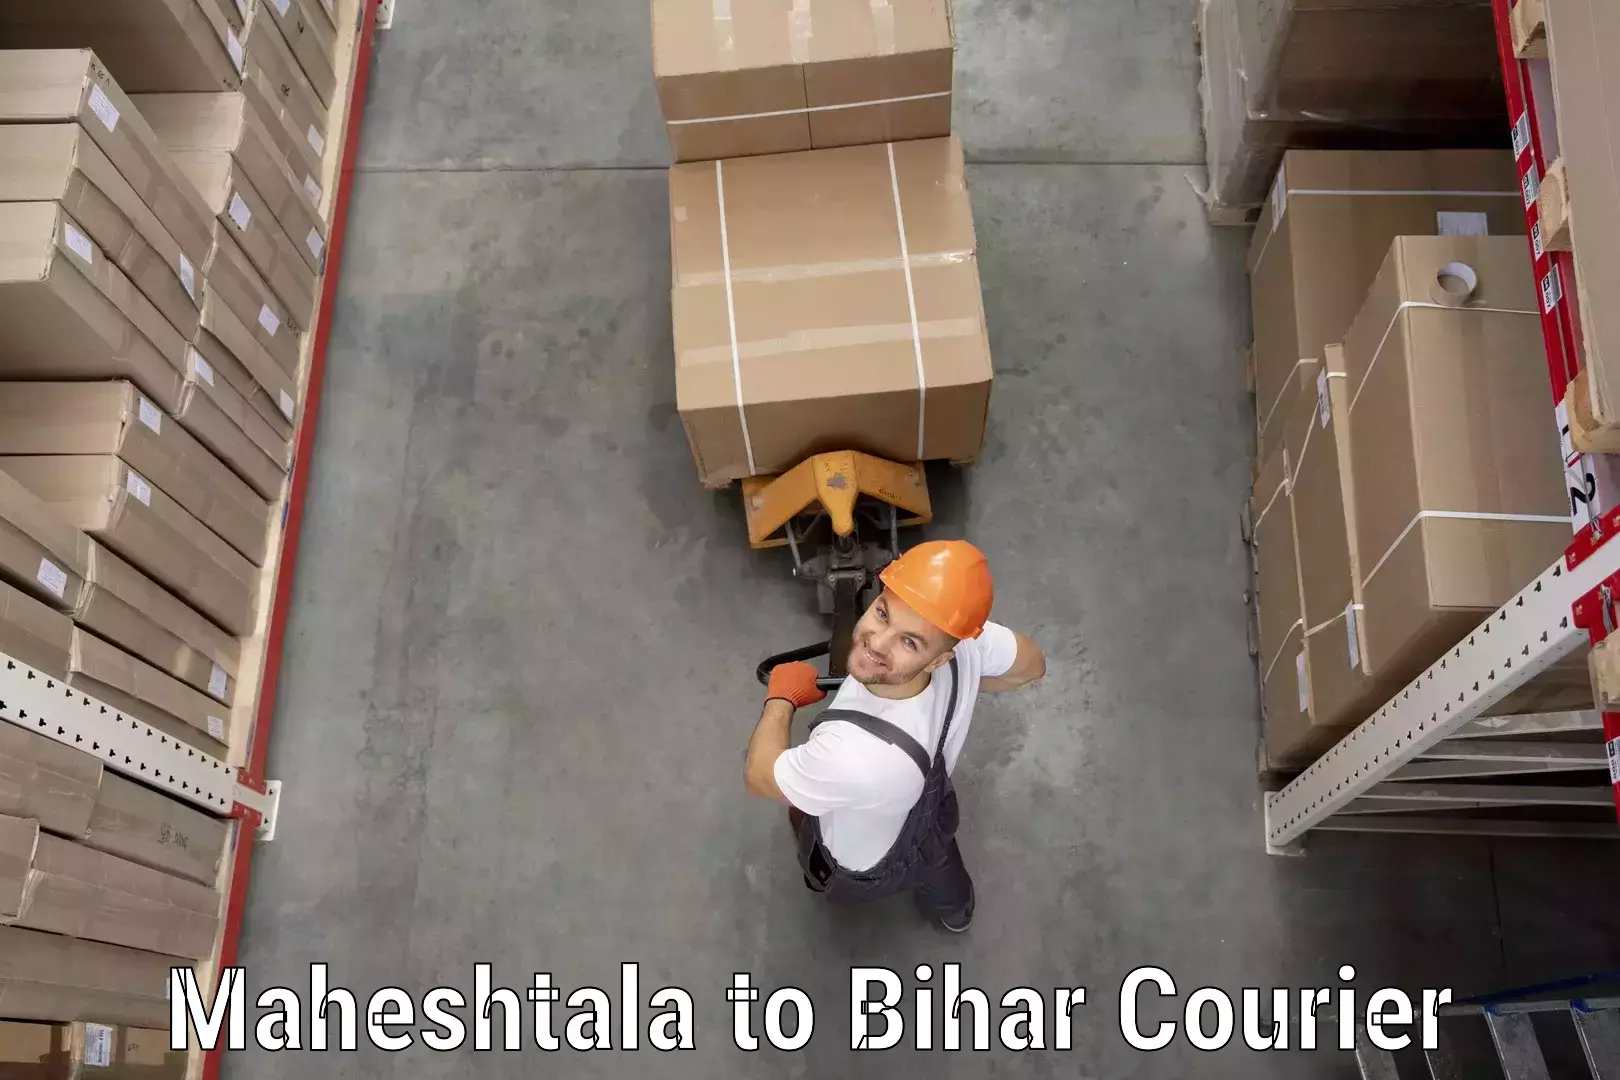 Affordable parcel service Maheshtala to Dhaka